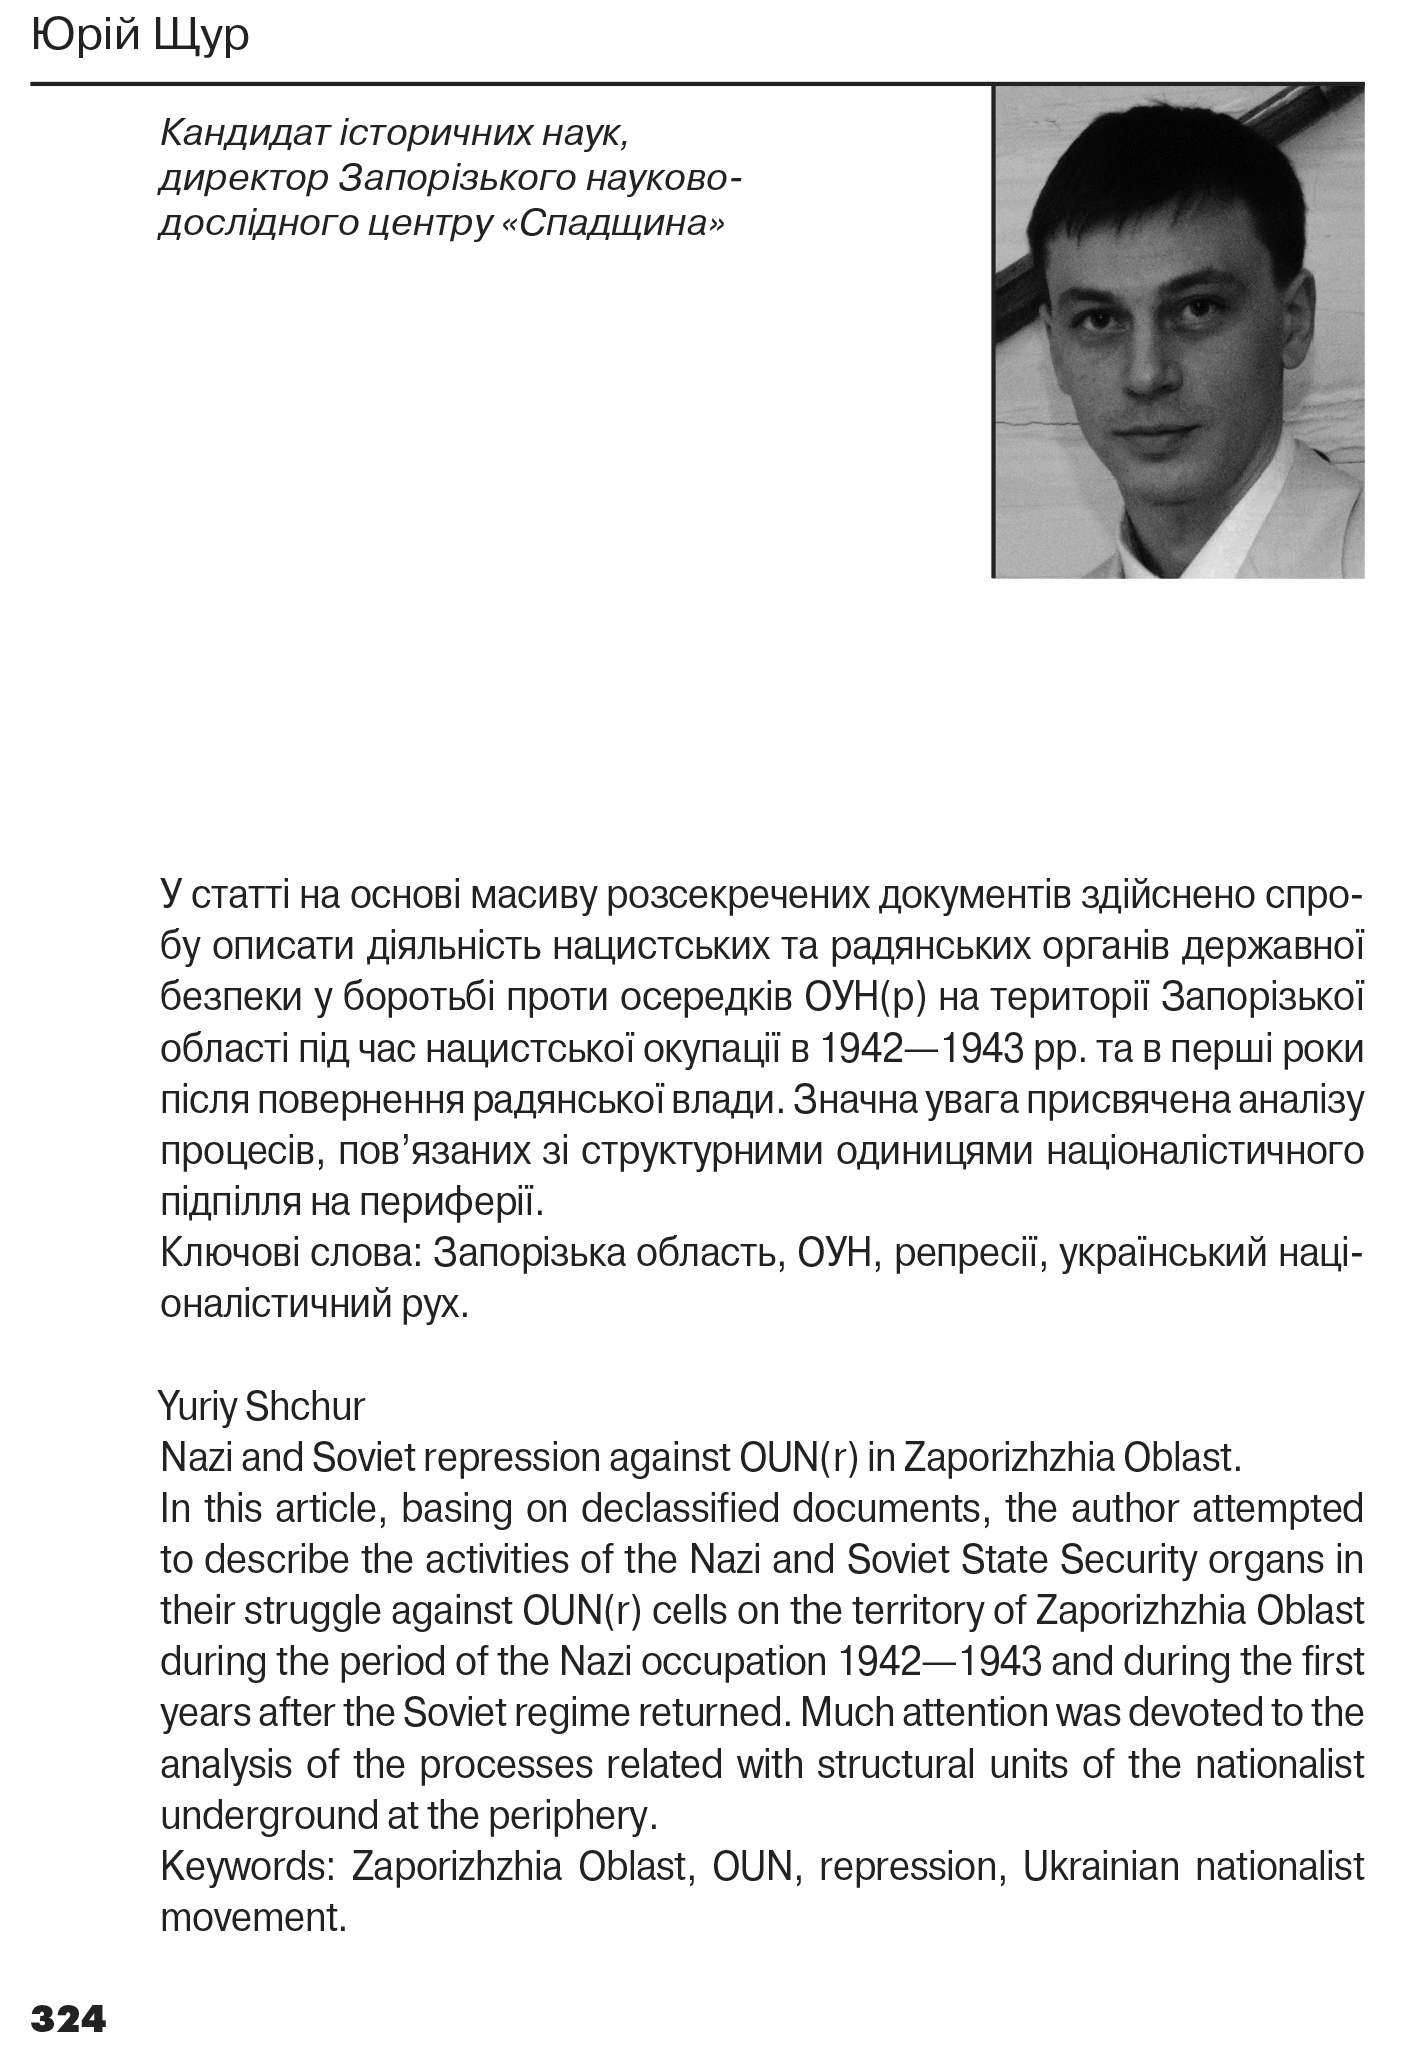 Український визвольний рух №21, ст. 324 - 344